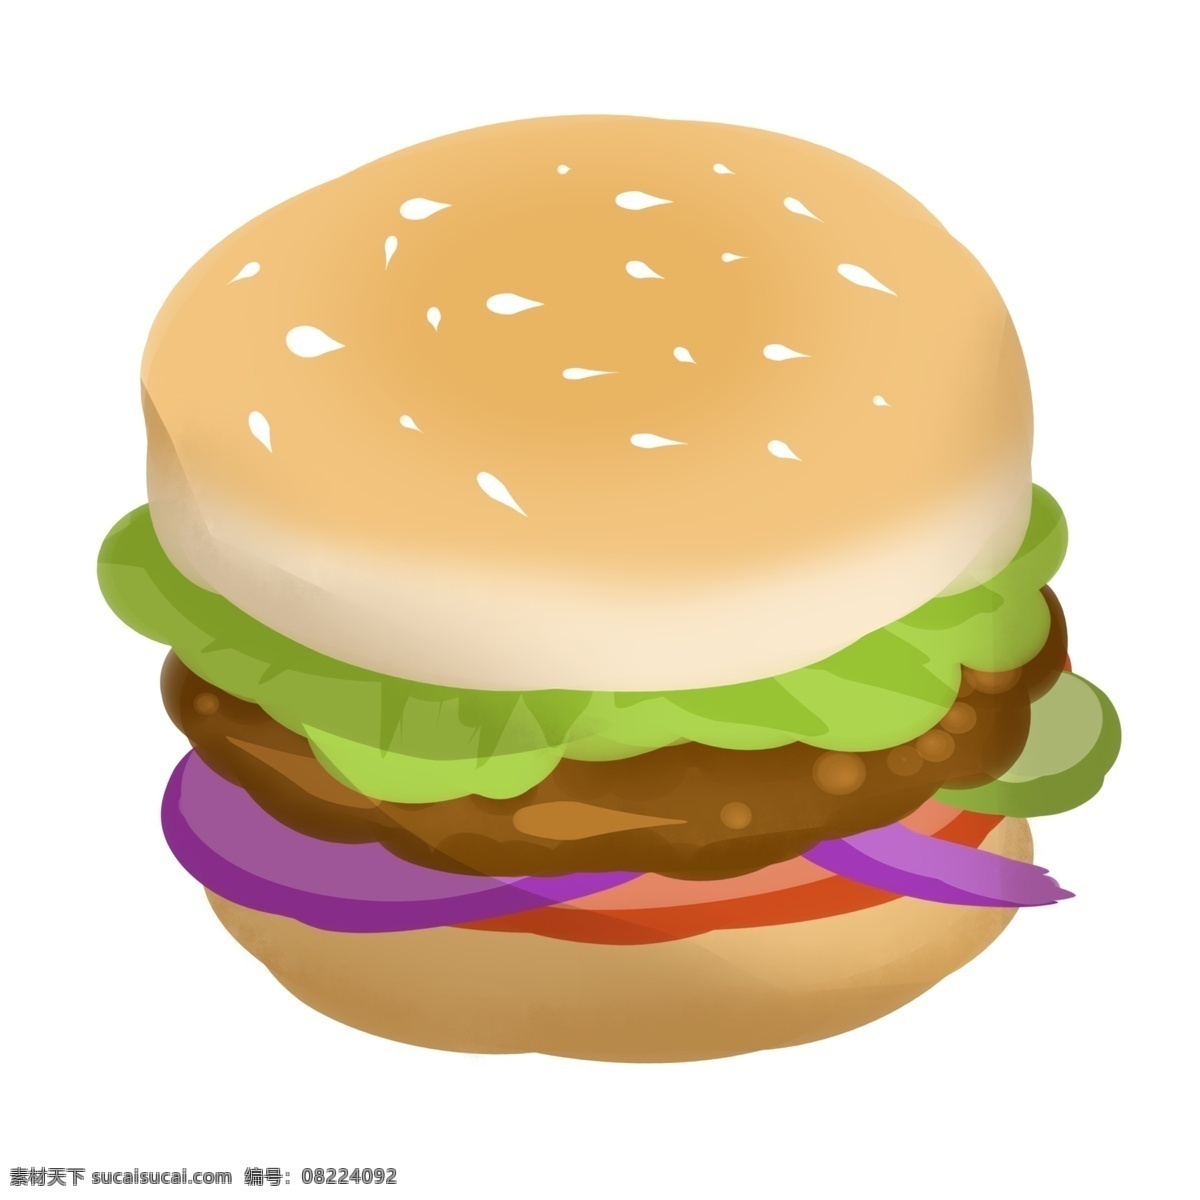 鸡腿 汉堡 巨无霸 插画 肯德基汉堡 香辣鸡腿堡 美味蟹黄包 卡通汉堡包 绿色的生菜 紫色的洋葱 黄色的面包